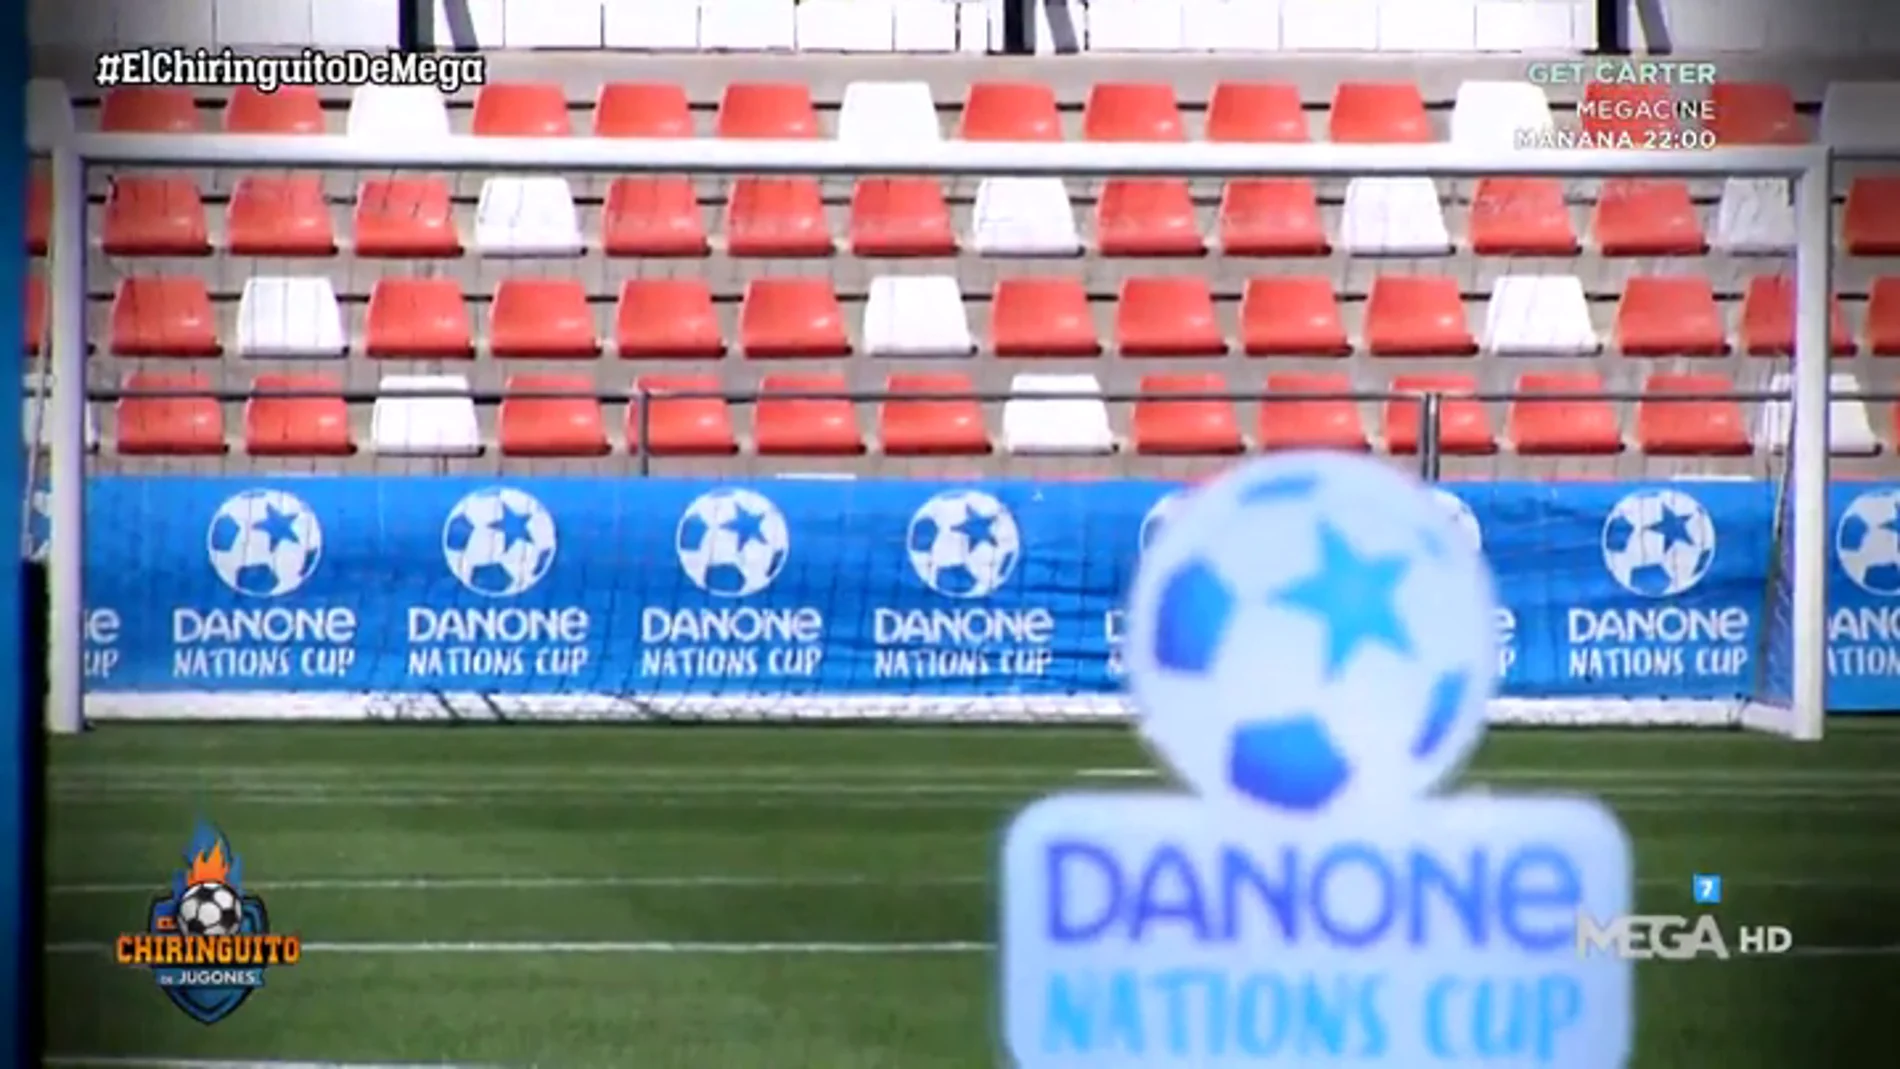 Cuenta atrás para la cuenta final de la Danone Nations Cup 